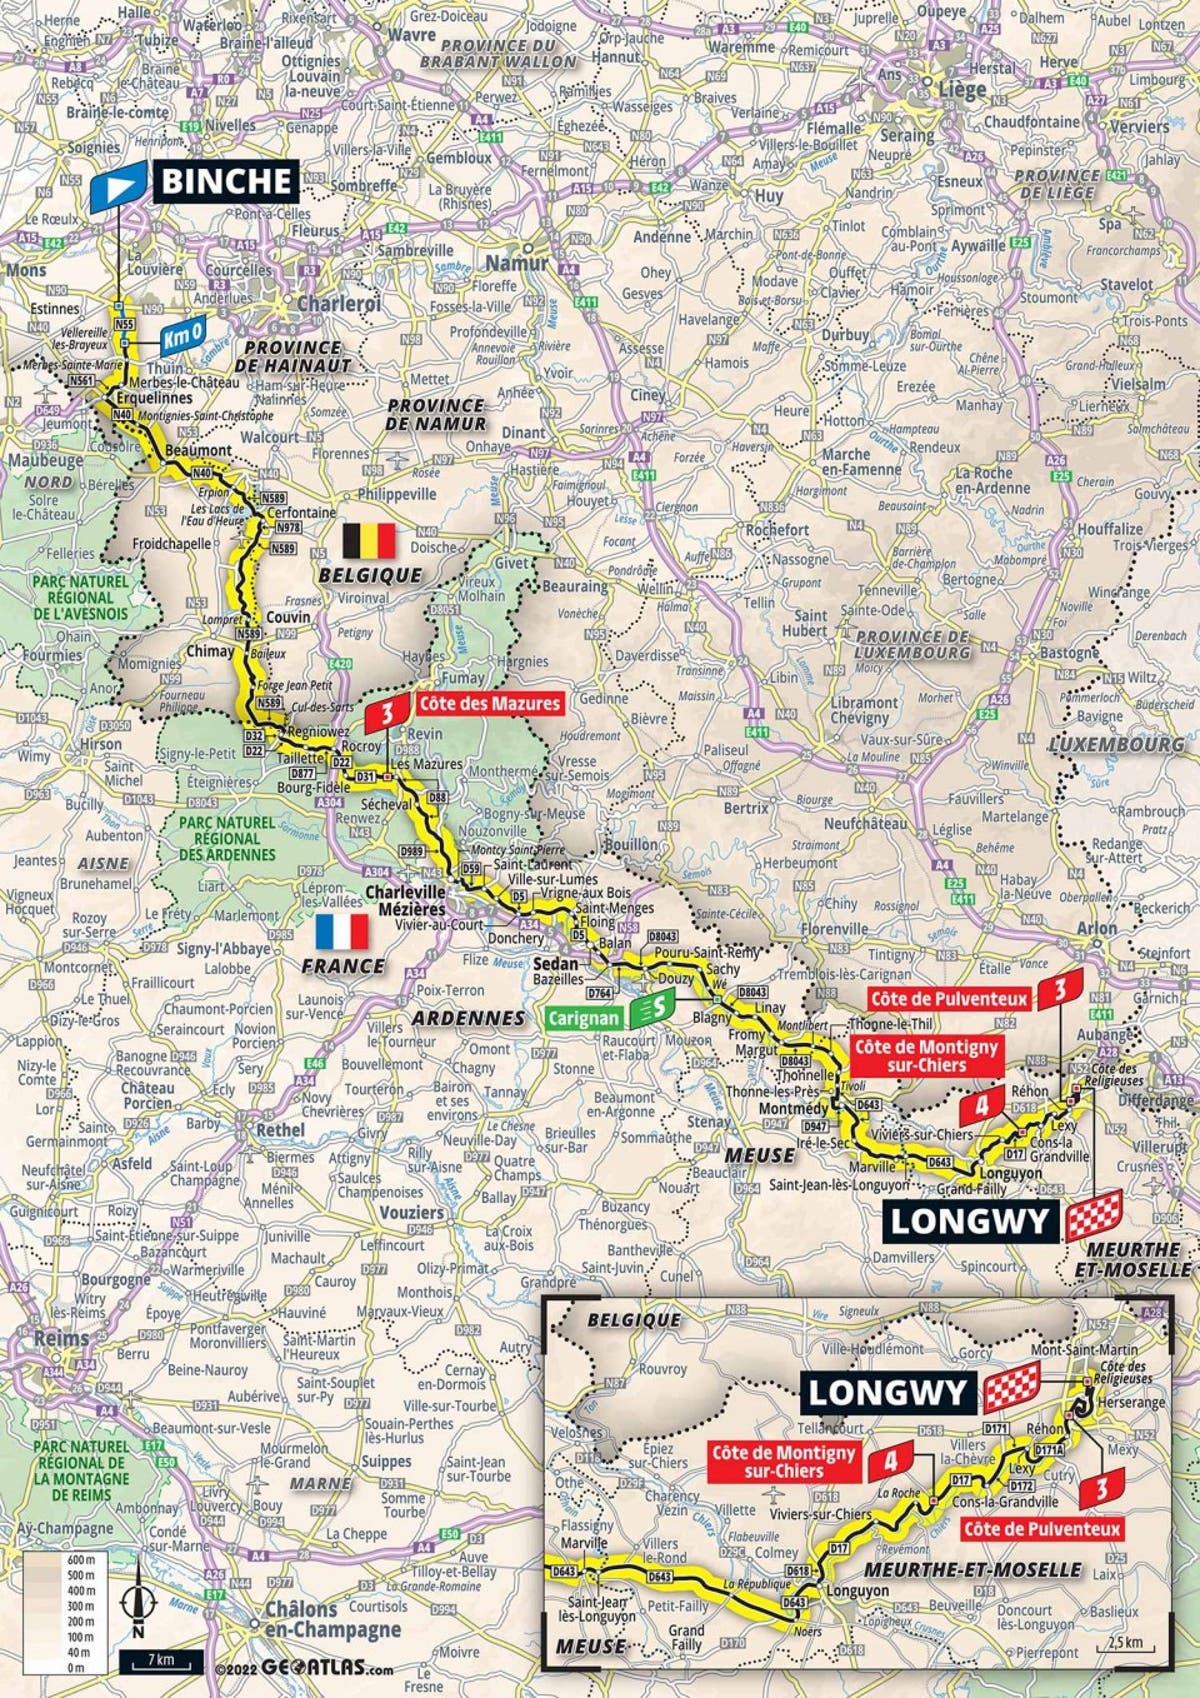 Preview etappe 6 van de Tour de France: Routekaart en routeprofiel 220km van Binche naar Longwy vandaag